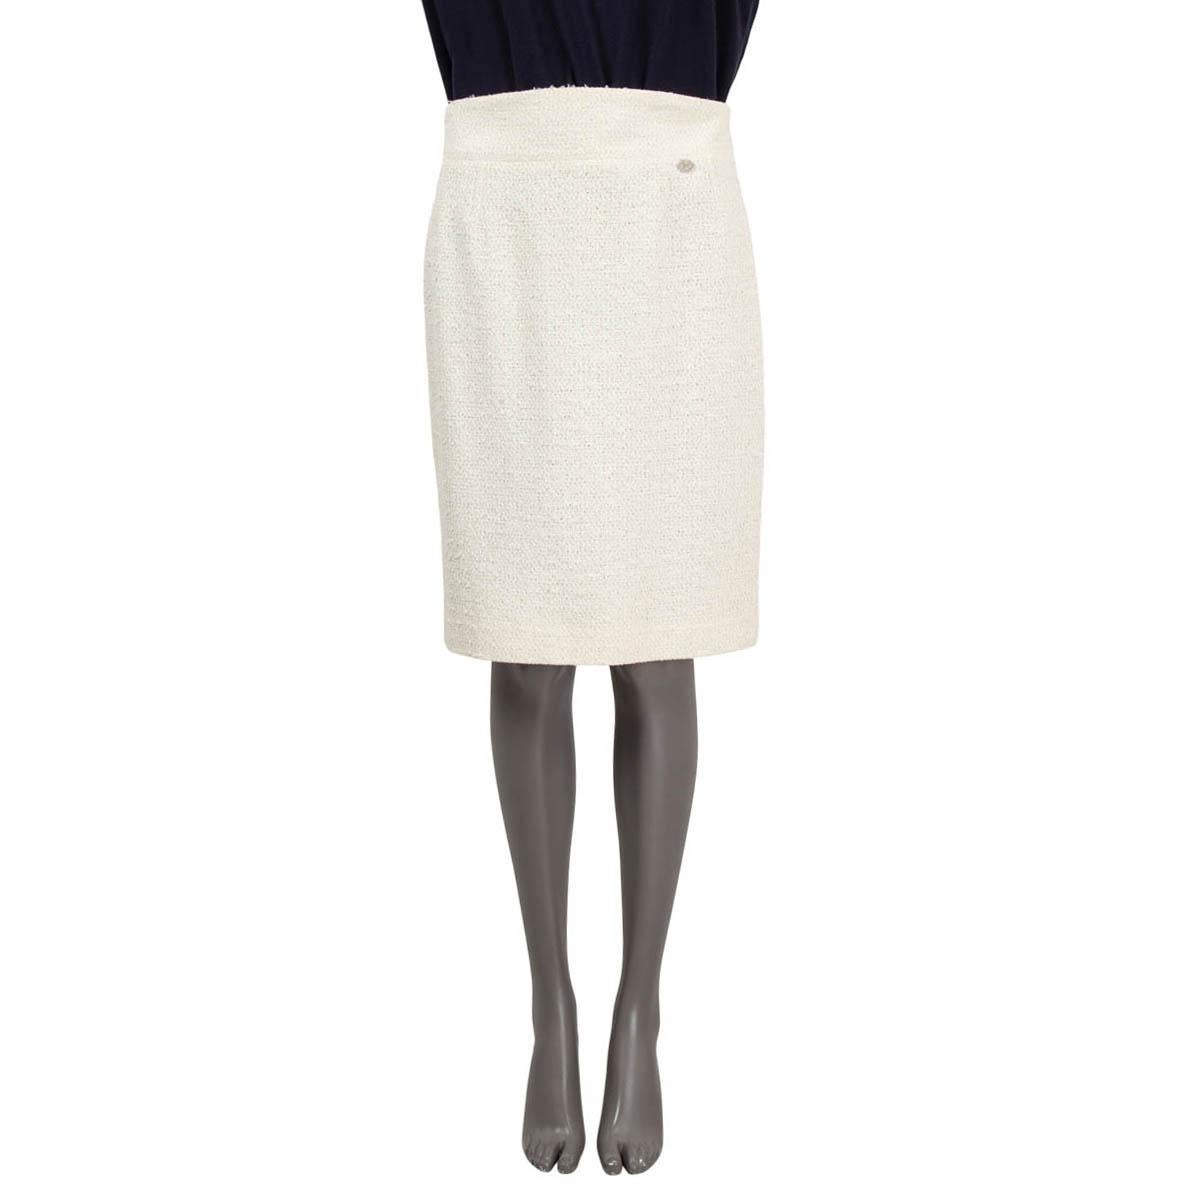 100% authentischer Chanel Tweed-Rock aus elfenbeinfarbenem Polyamid (58%), Polyester (24%) und Baumwolle (18%). Schließt mit Häkchen und unsichtbarem Reißverschluss auf der Rückseite. Gefüttert mit elfenbeinfarbener Seide (100%). Wurde getragen und